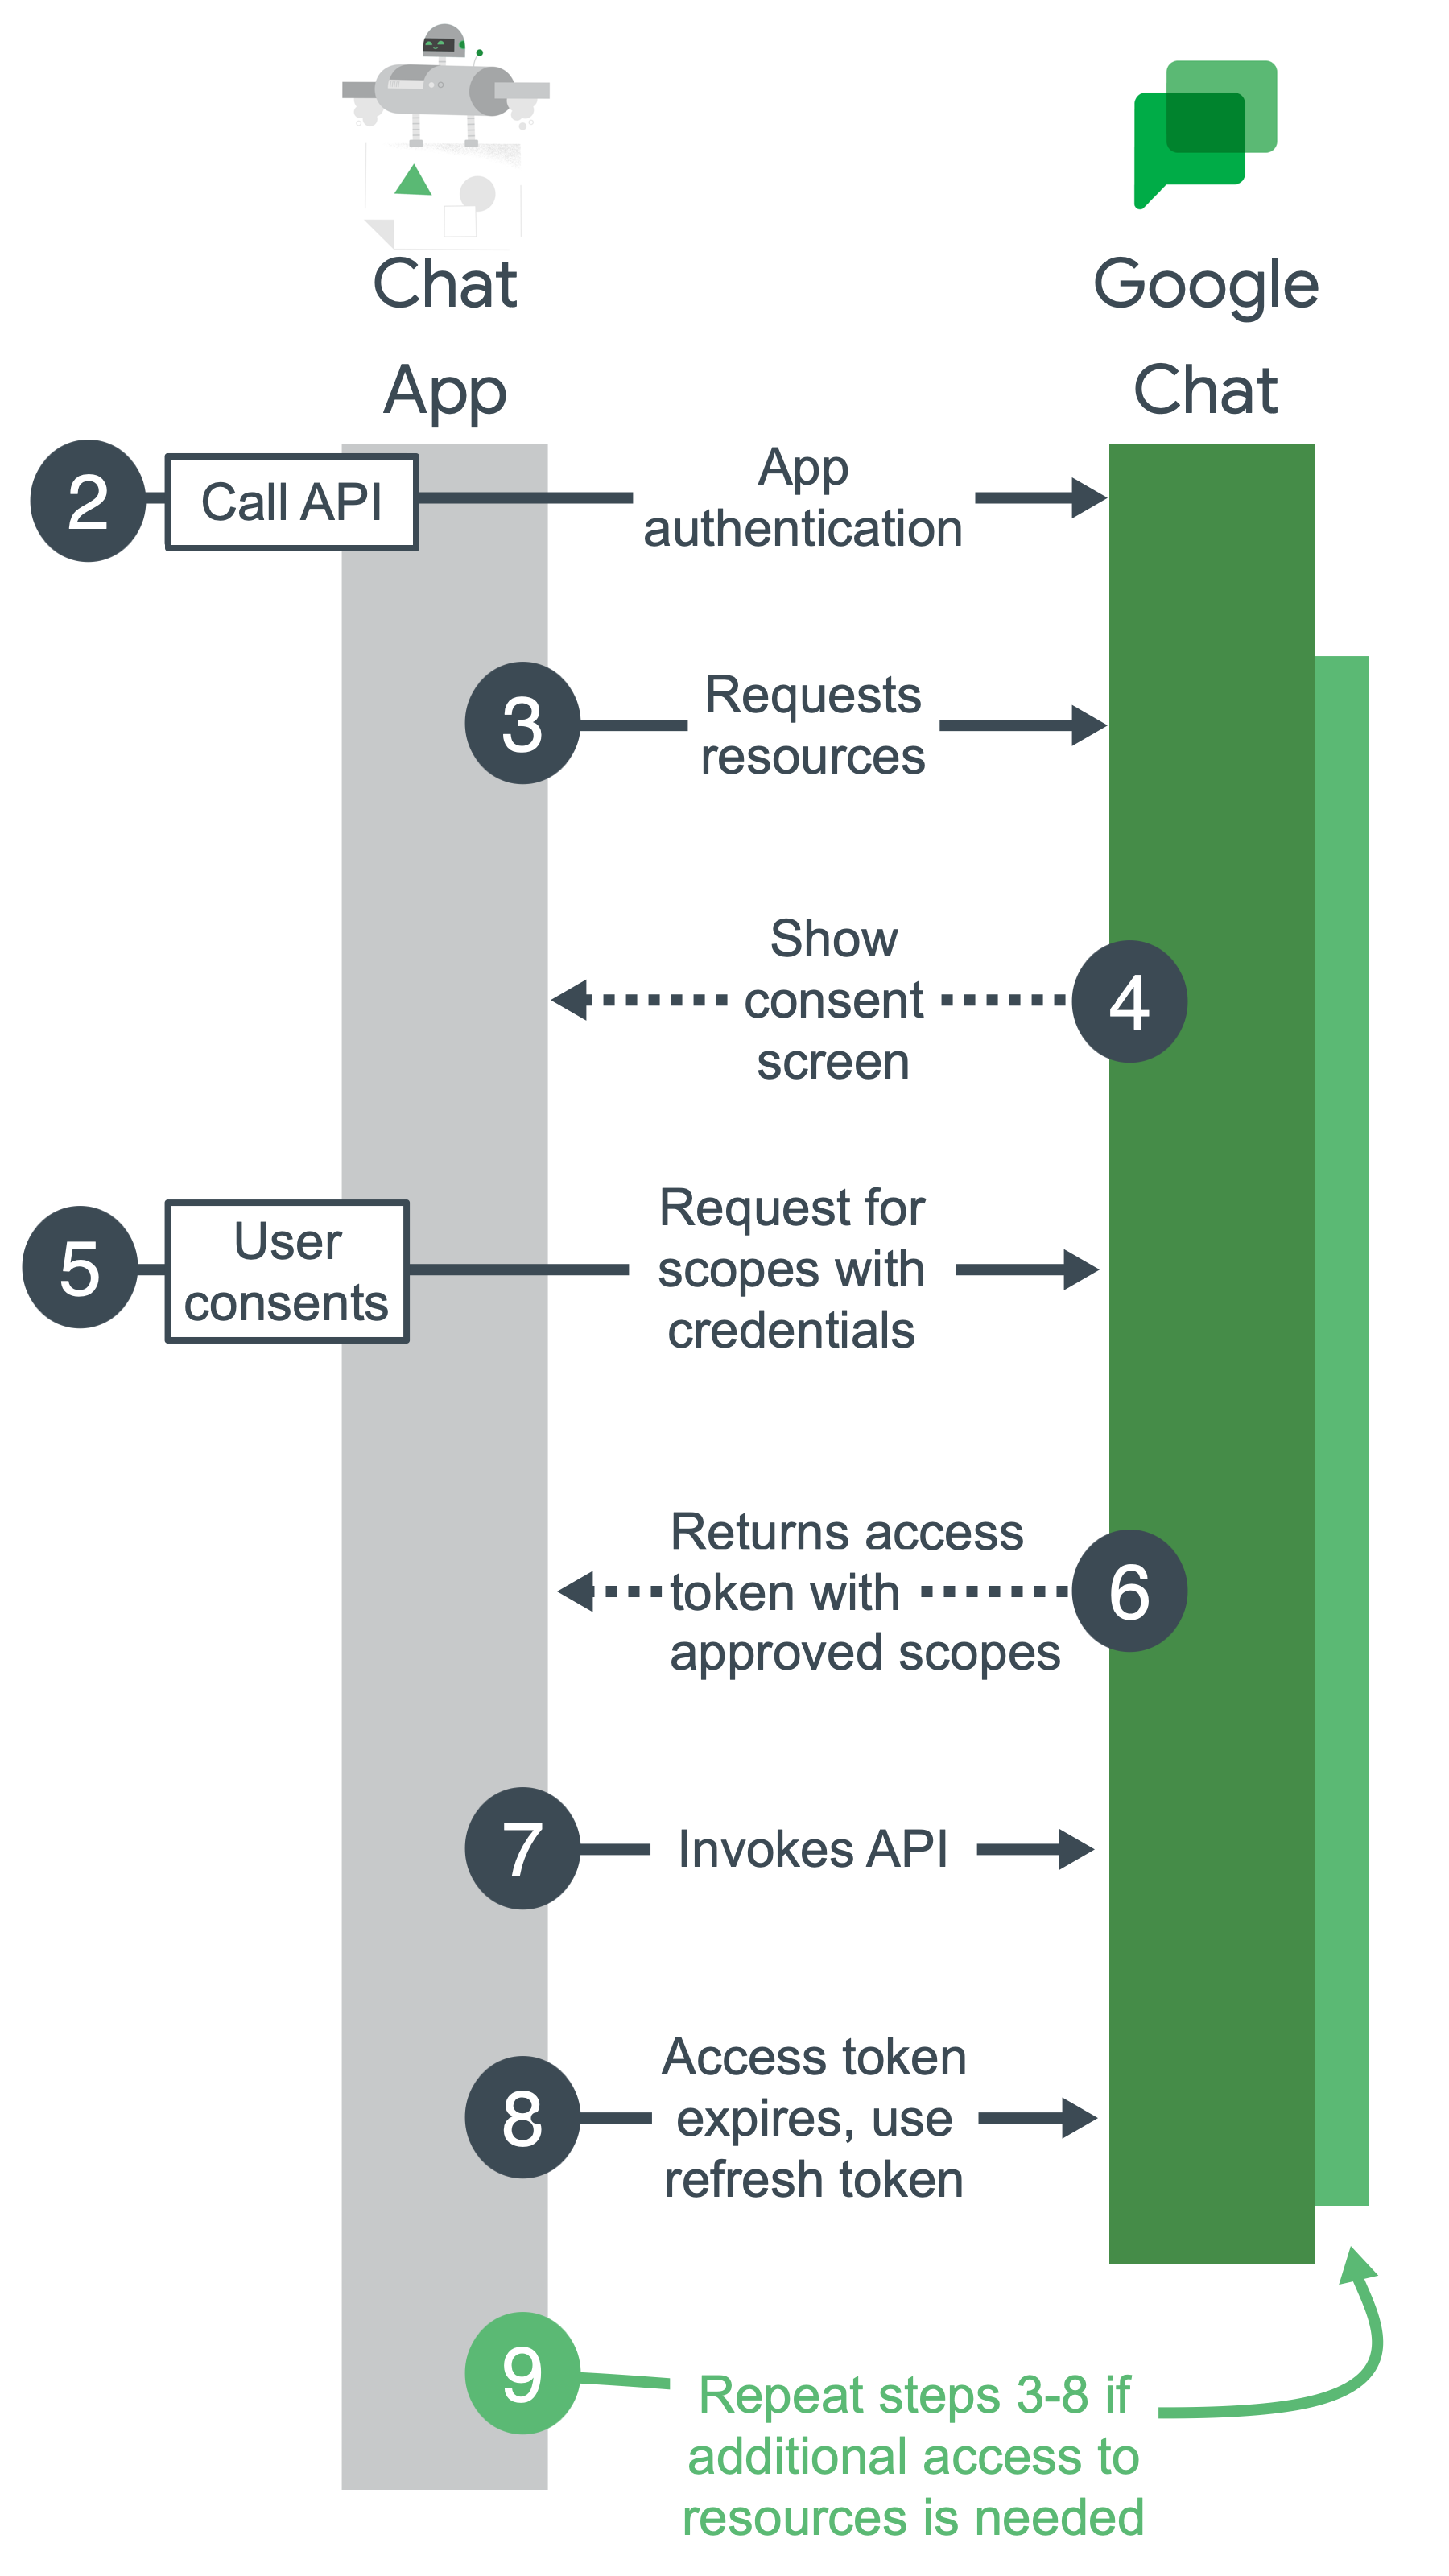 Google Chat kimlik doğrulaması ve yetkilendirme için üst düzey adımlar